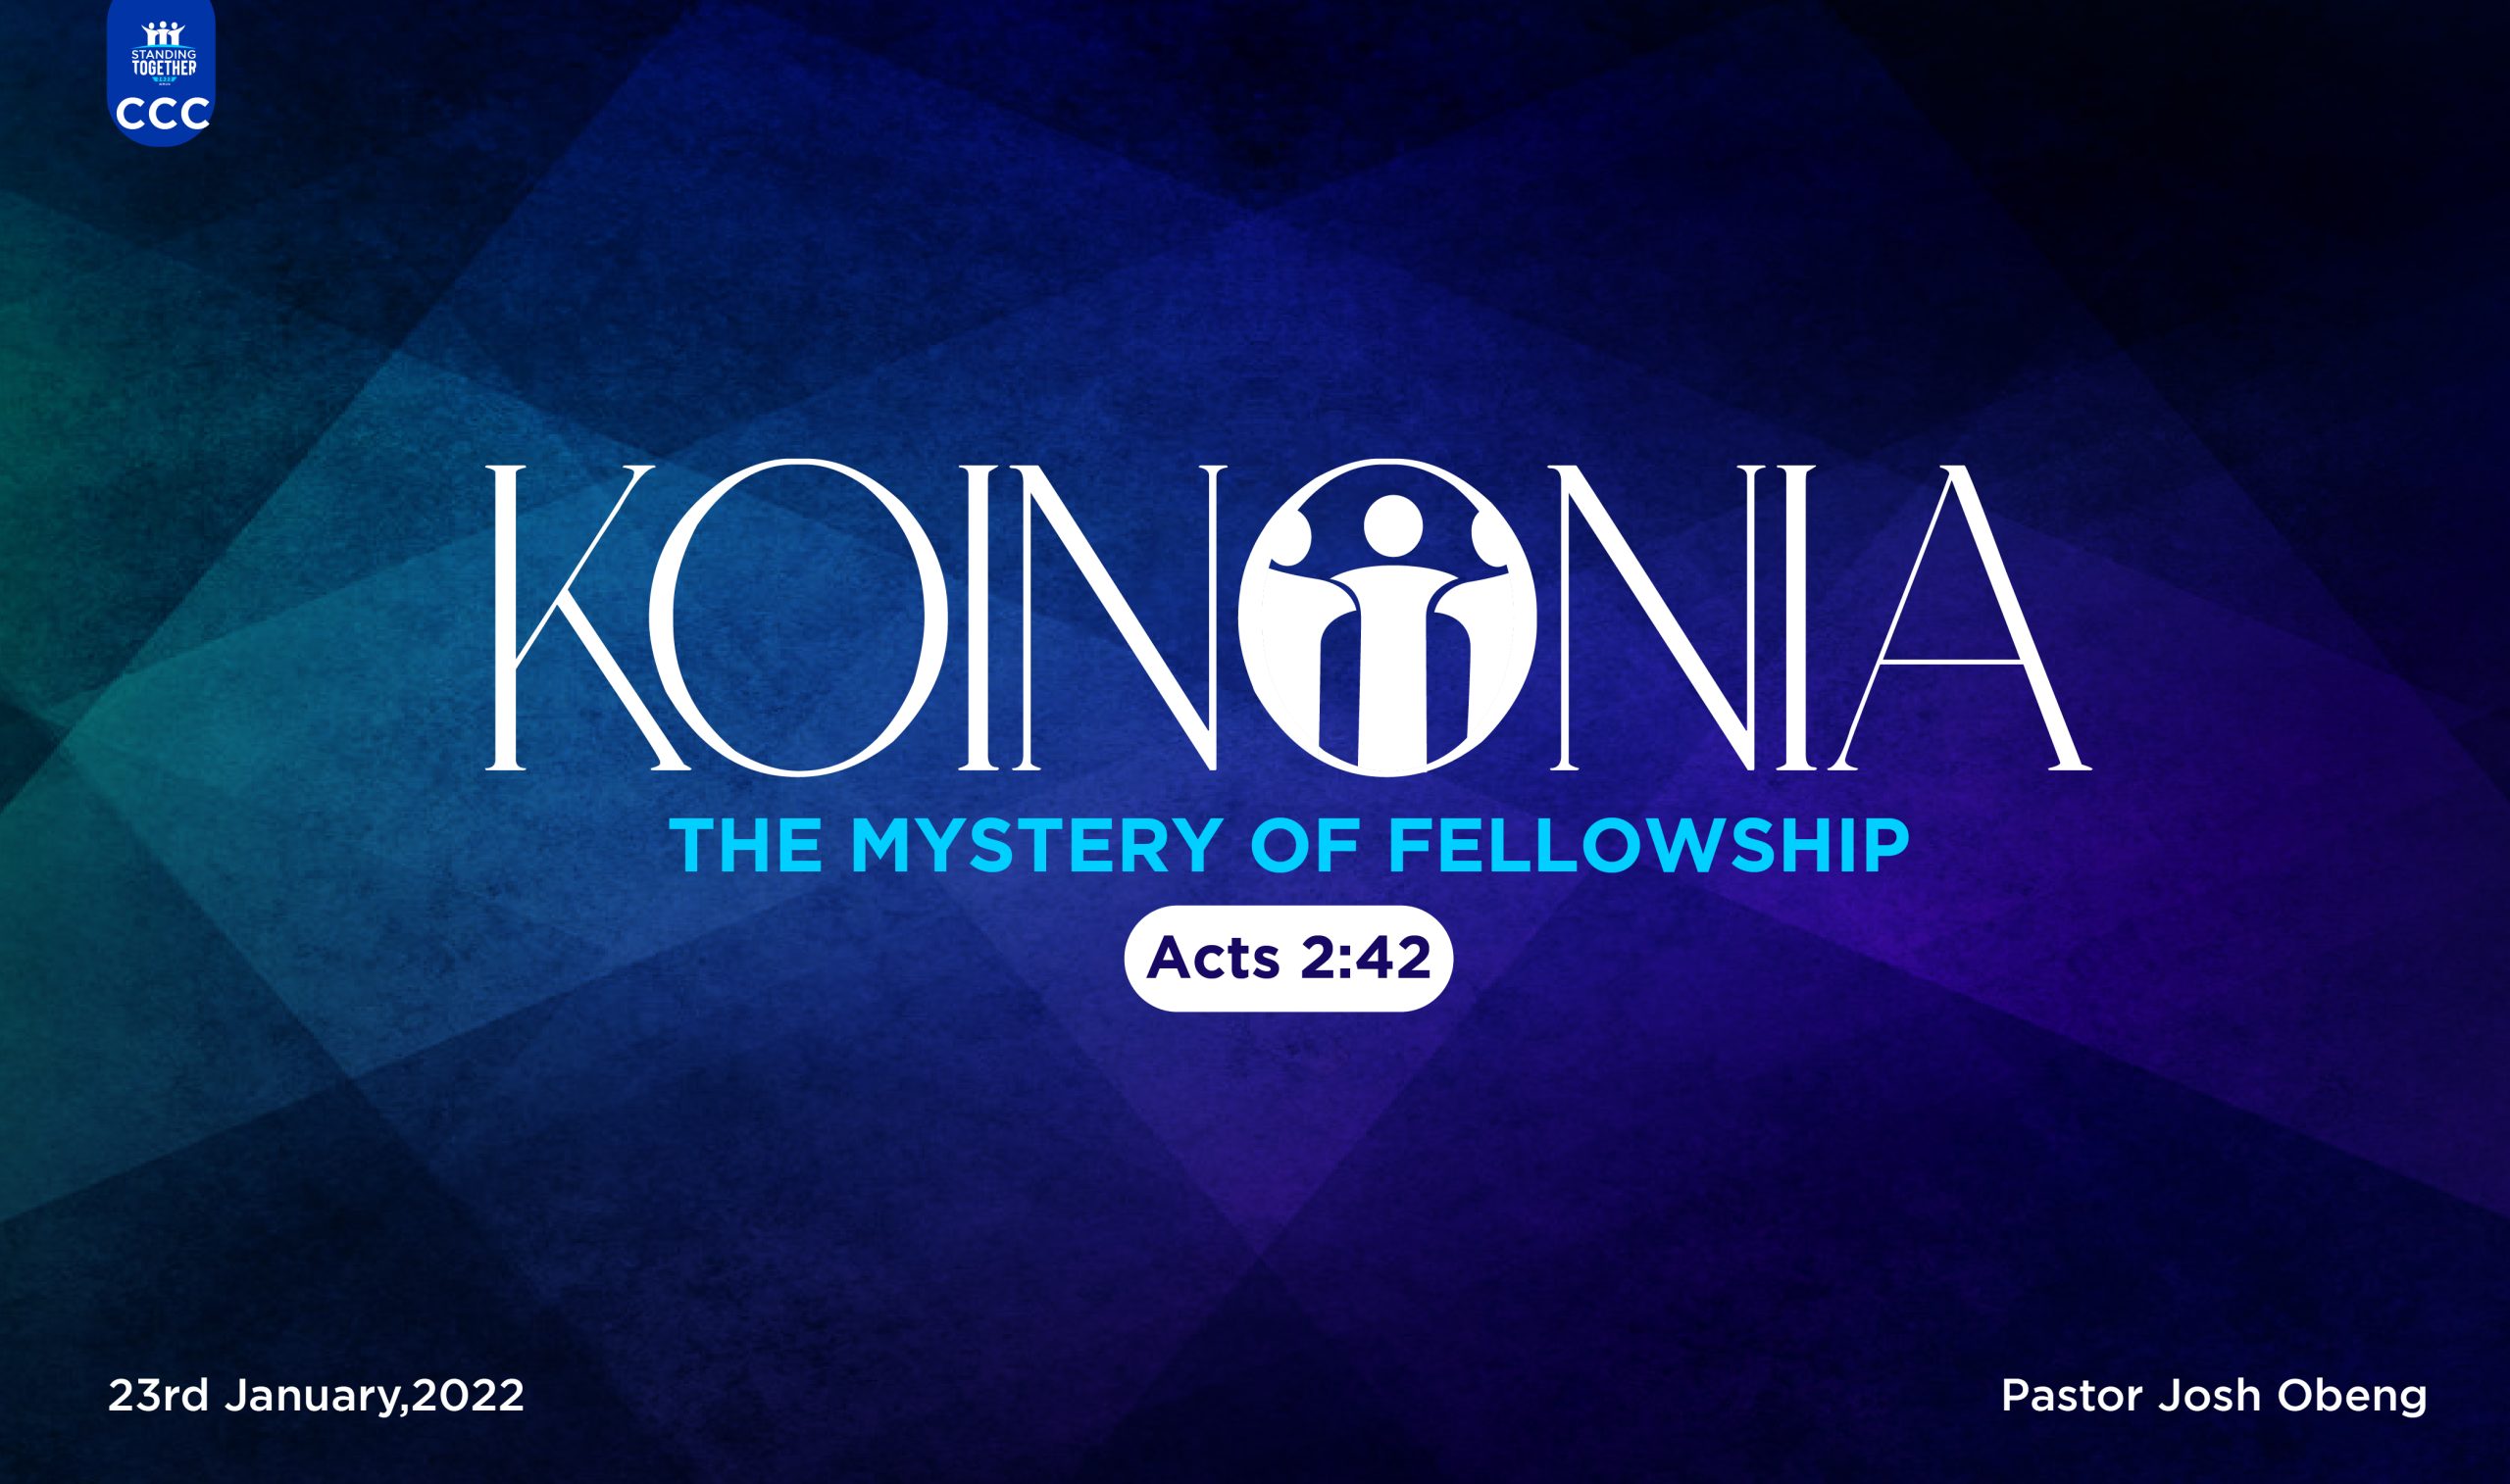 KOINONIA – THE MYSTERY OF FELLOWSHIP